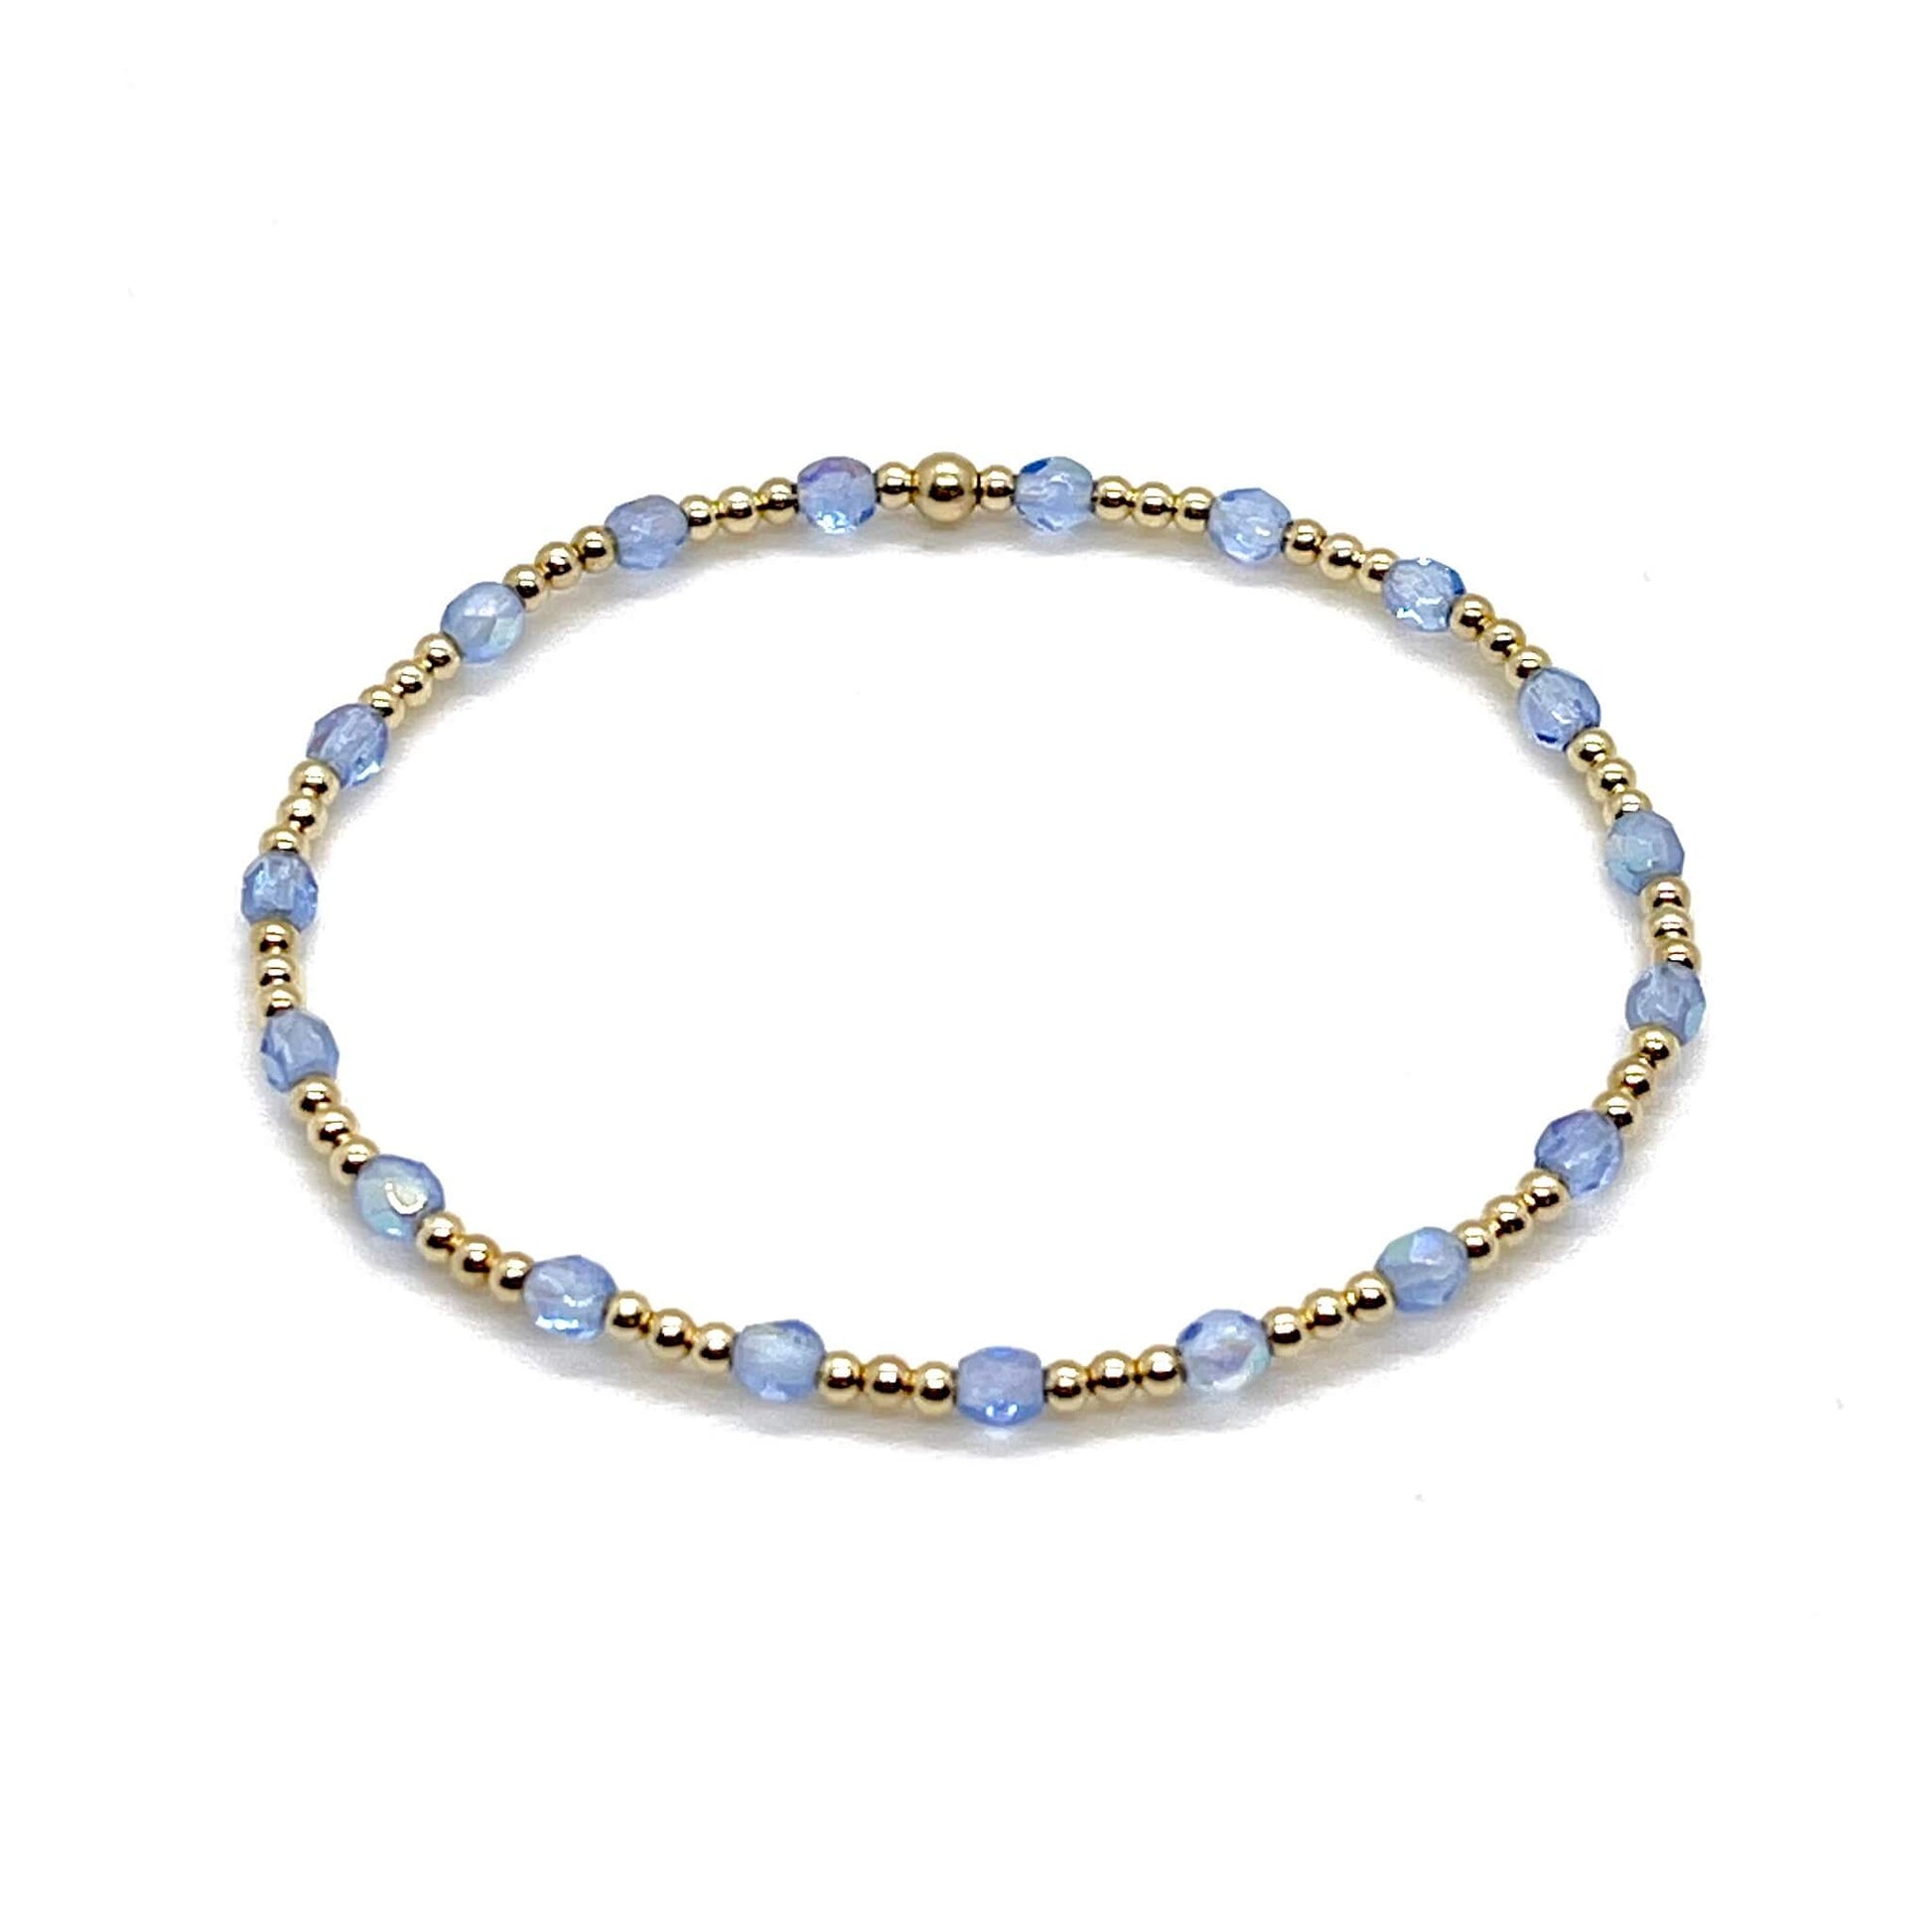 Blue crystal bracelet with gold beads. Handmade delicate beaded bracelet for women.